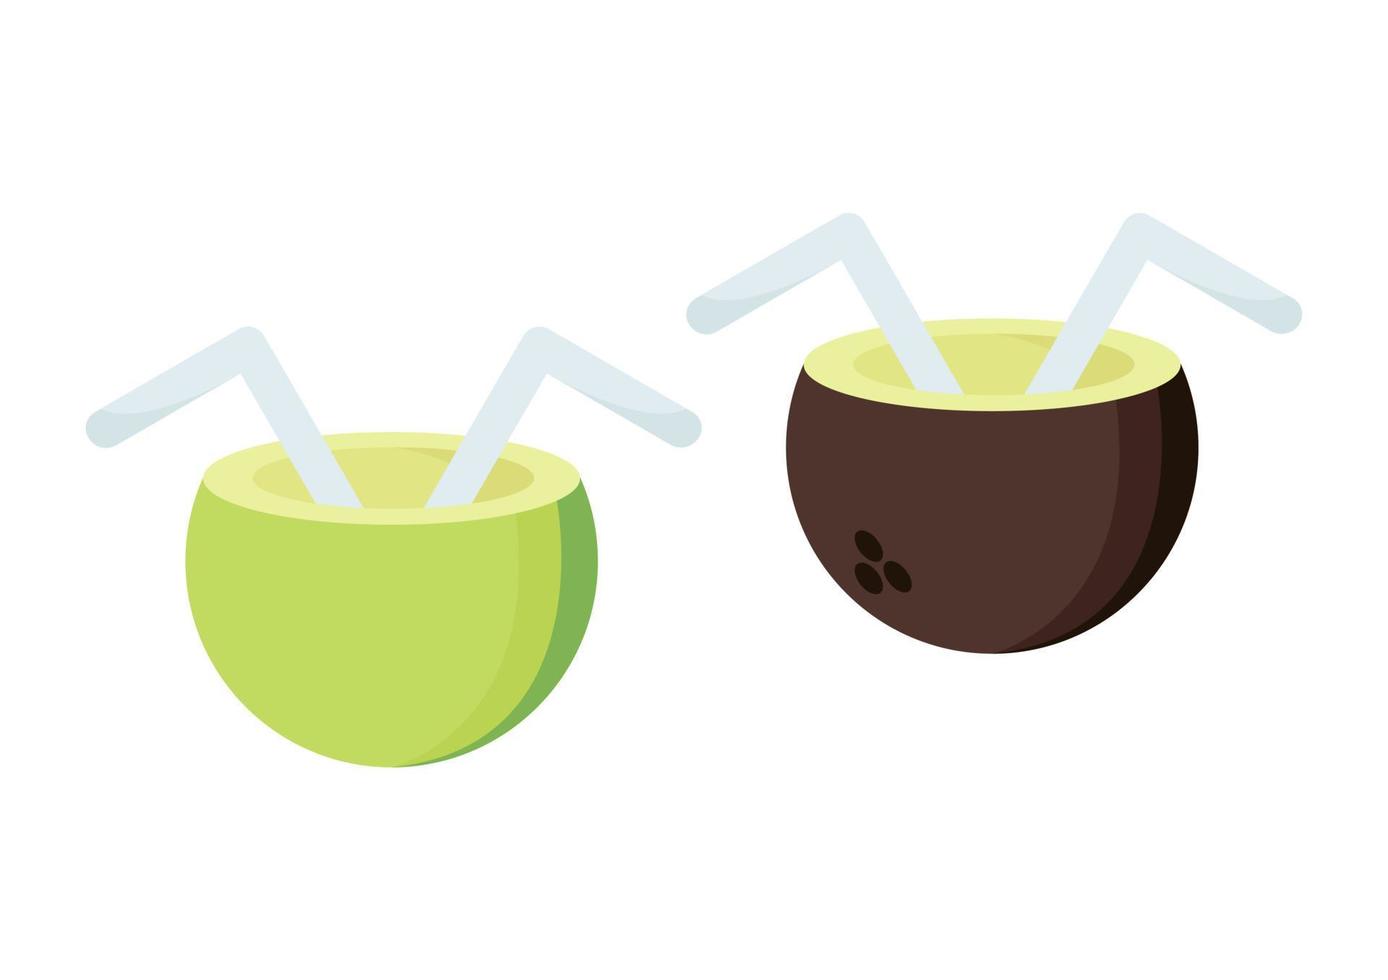 ilustração de gelo de coco jovem com dois tipos de coco vetor